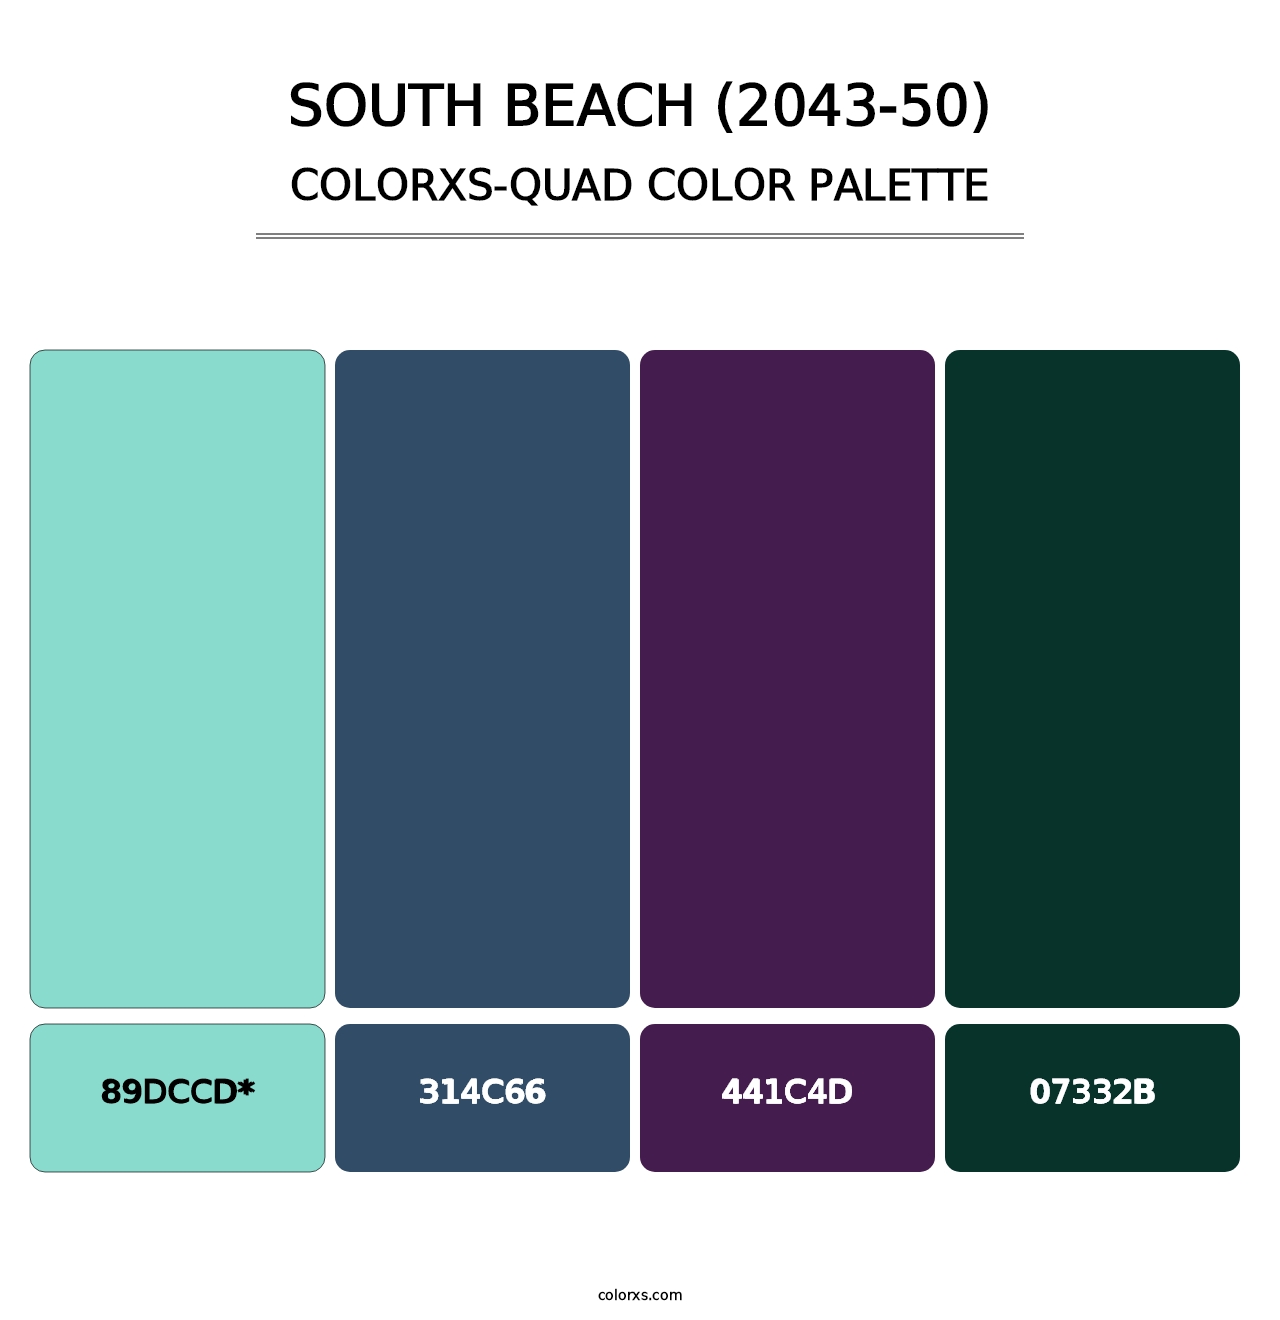 South Beach (2043-50) - Colorxs Quad Palette